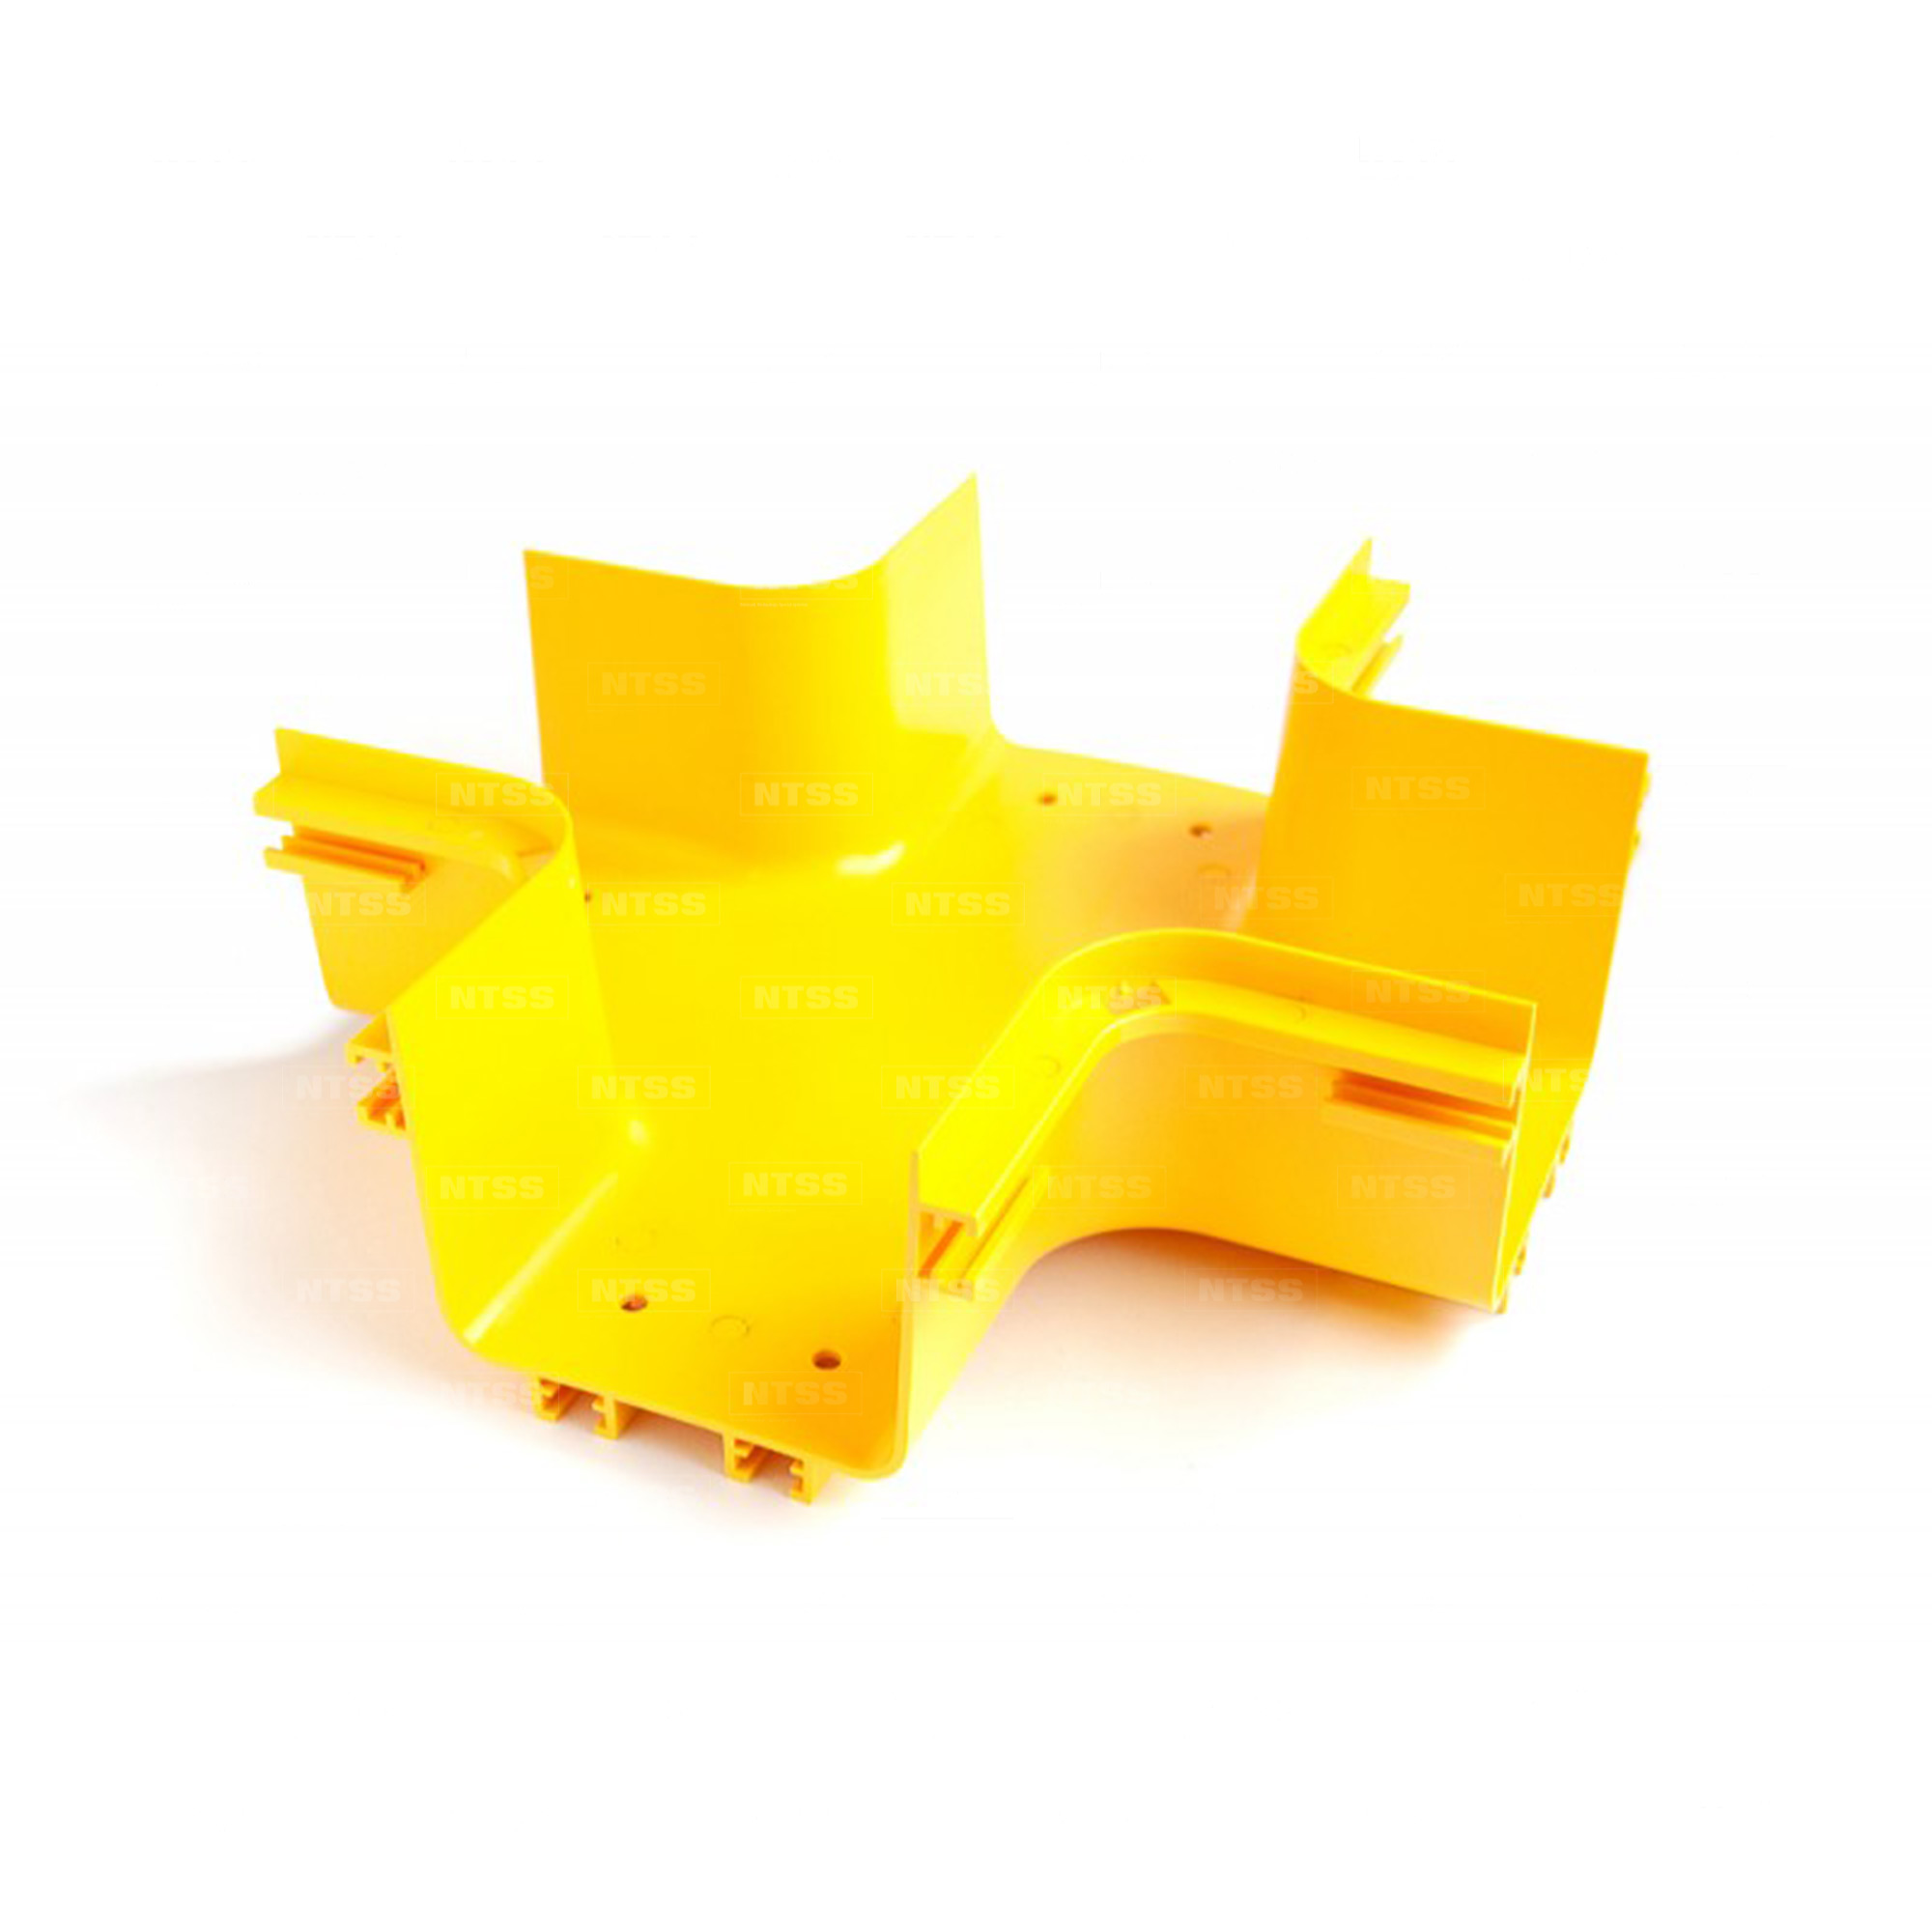 Х-соединитель оптического лотка 60x60 мм, желтый